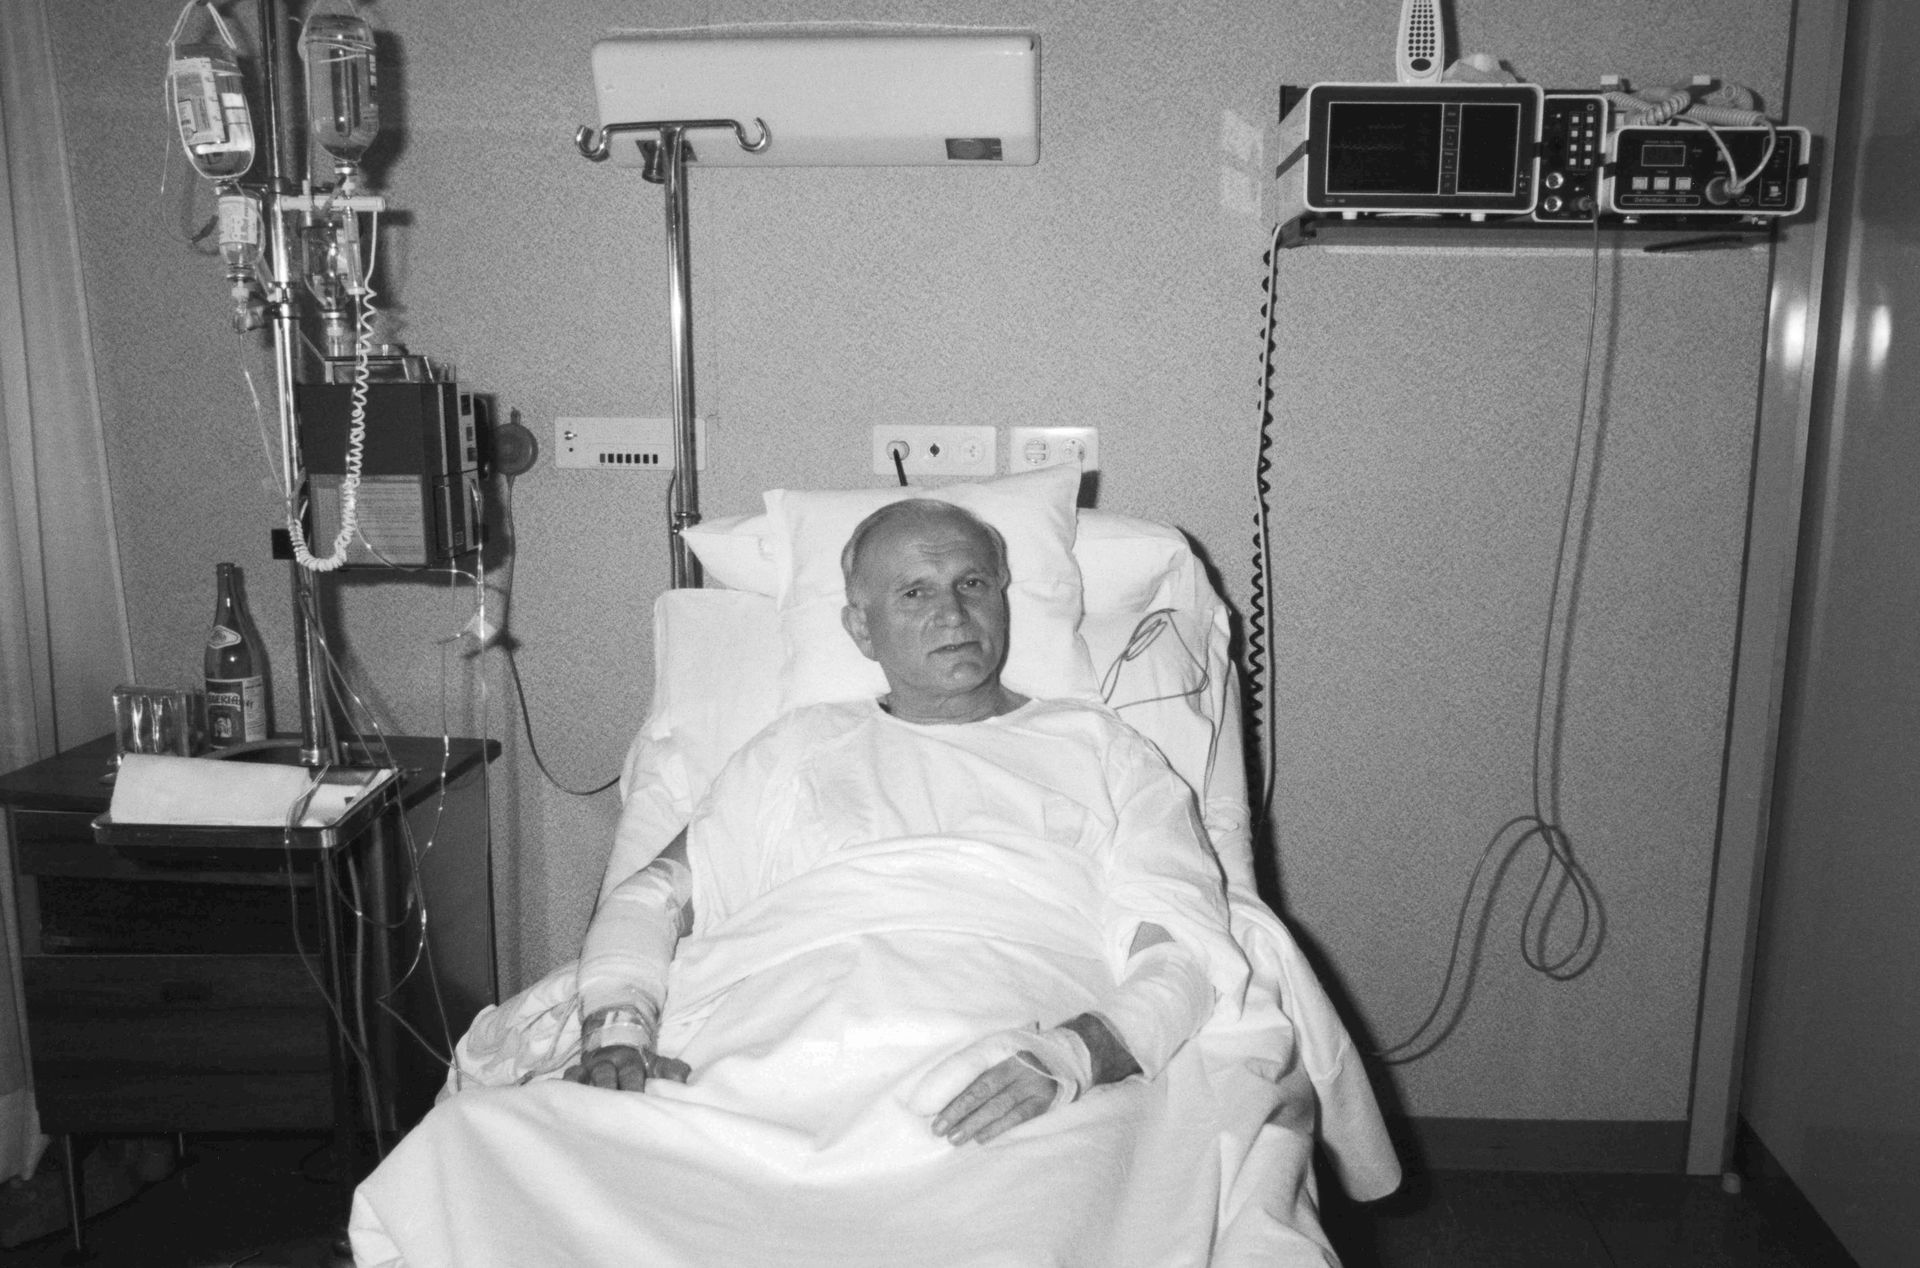 Le Pape Jean-Paul II dans sa chambre d’hôpital au Policlinico Gemelli de Rome après la tentative d’assassinat dont il fut l’objet en juin 1981.
